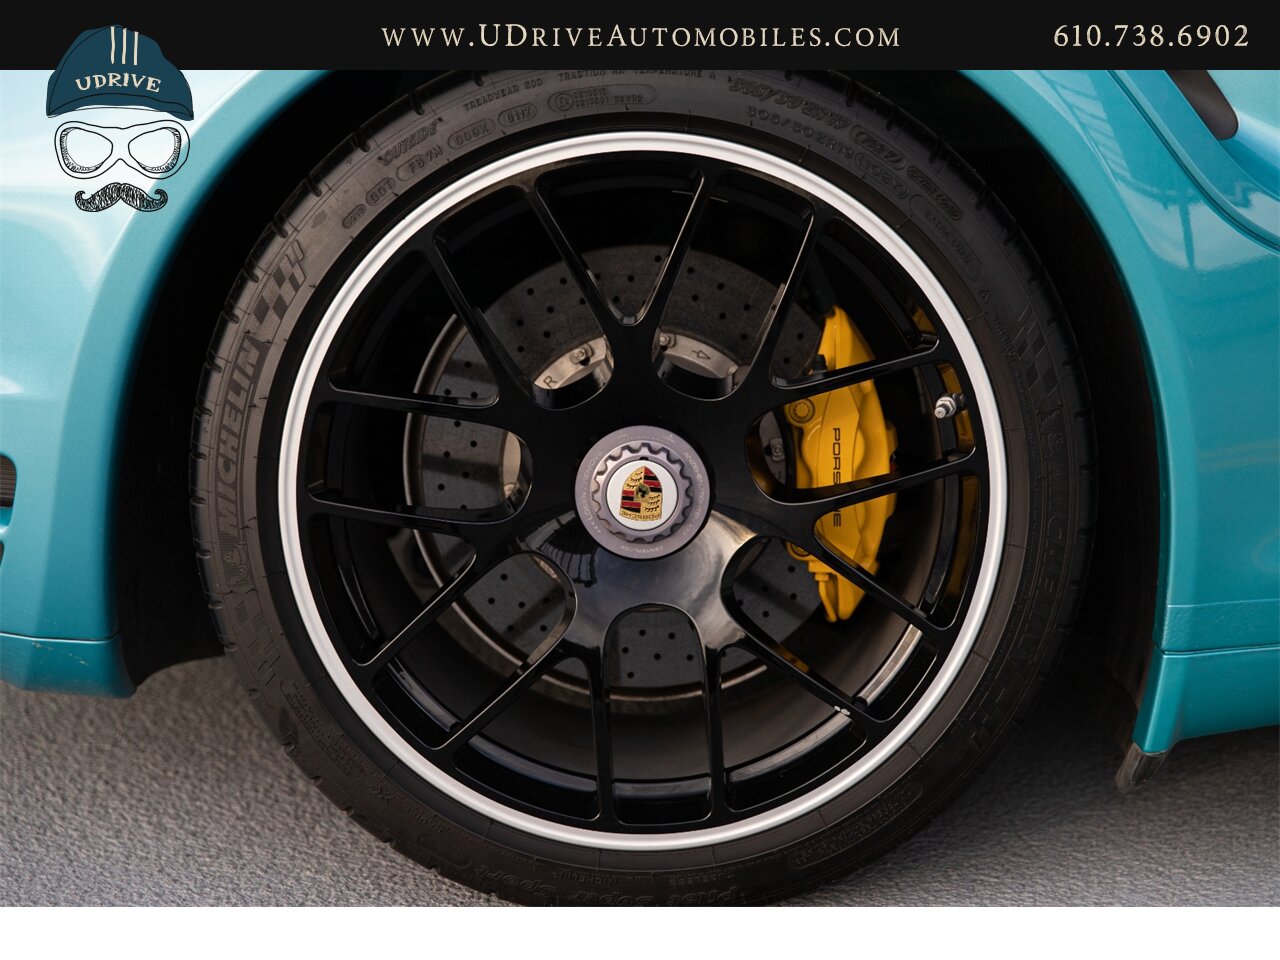 2012 Porsche 911 Turbo S 997.2 RARE Ipanema Blue 13k Miles  Vent Sts Carbon Fiber Pntd Exter Pkg Blk Centerlock Whls $173k MSRP - Photo 51 - West Chester, PA 19382